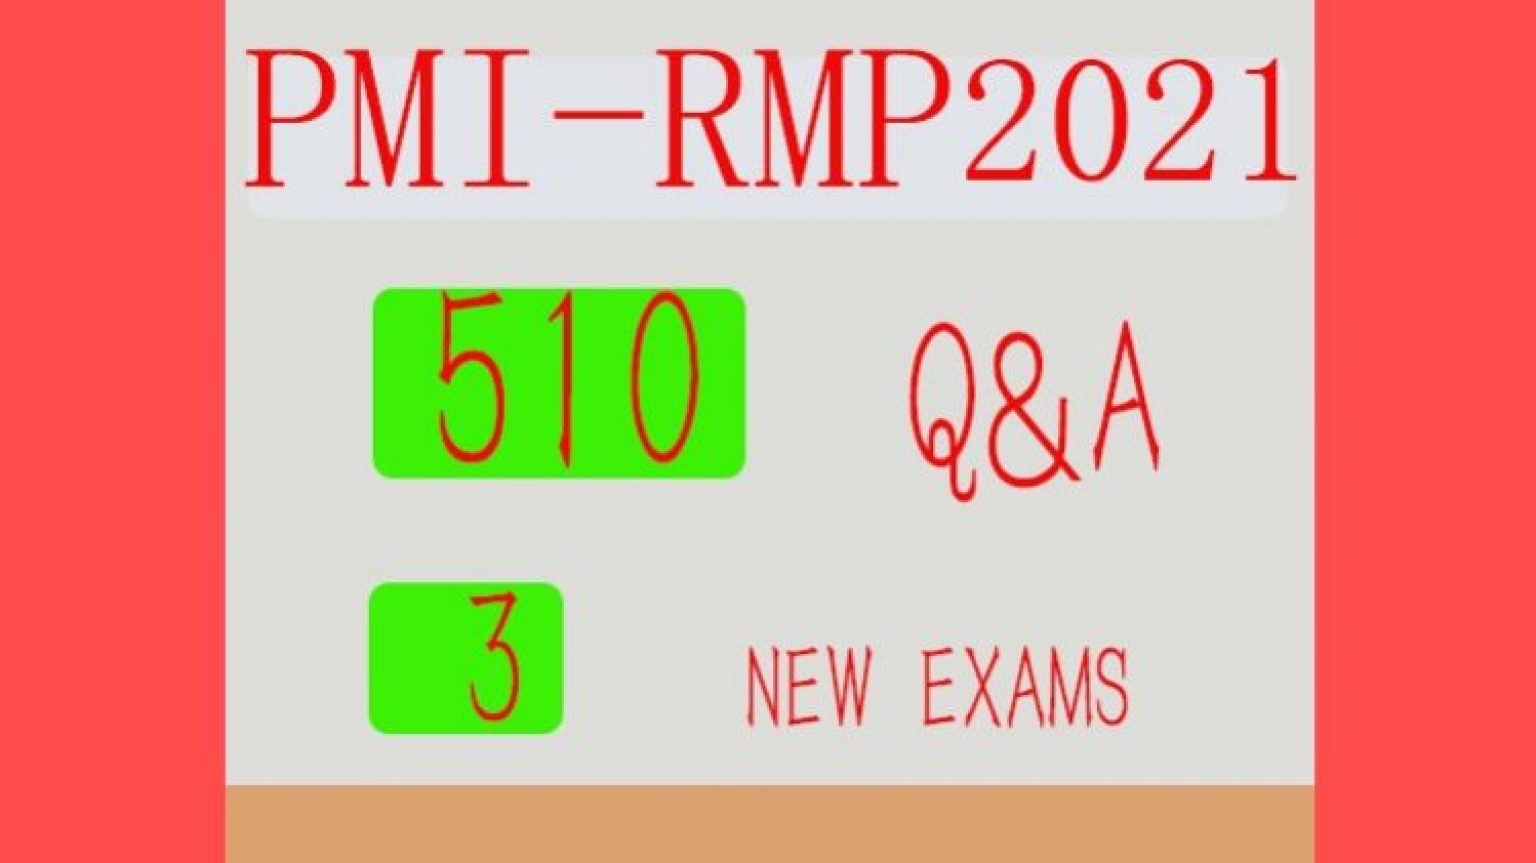 PMI-RMP Tests